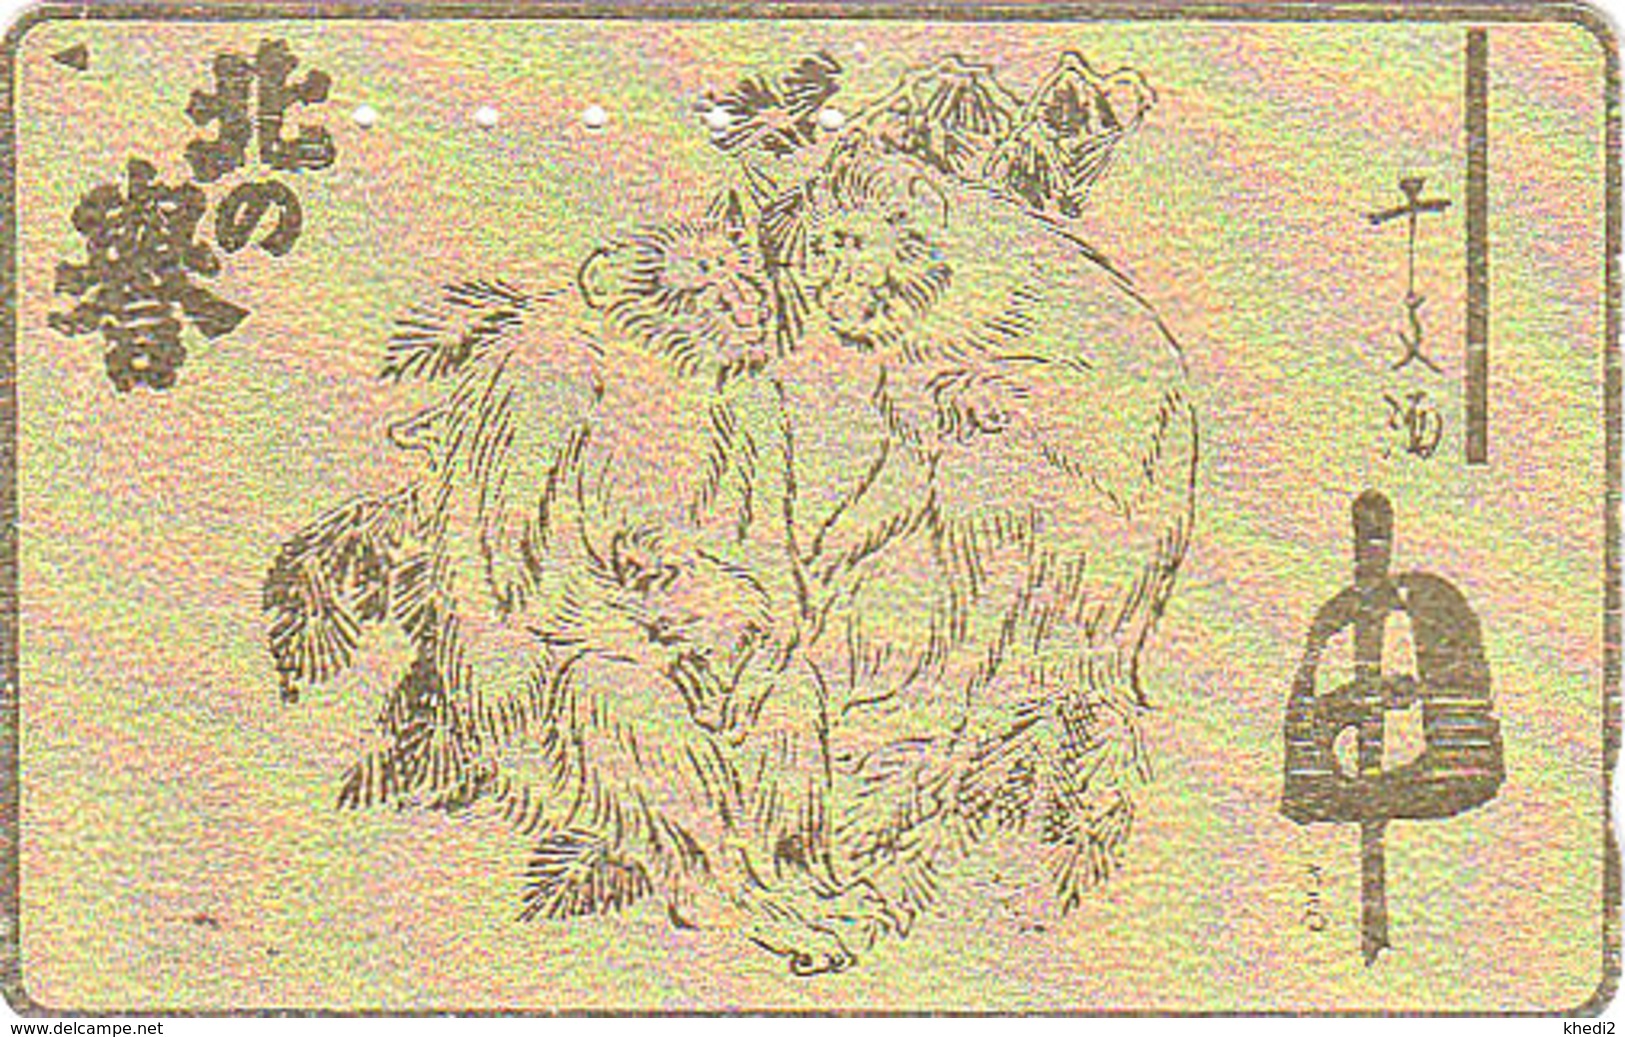 Télécarte DOREE Japon / 110-011 - ZODIAQUE - ANIMAL - SINGE - MONKEY GOLD Horoscope Japan Phonecard - AFFE - 999 - Zodiaque